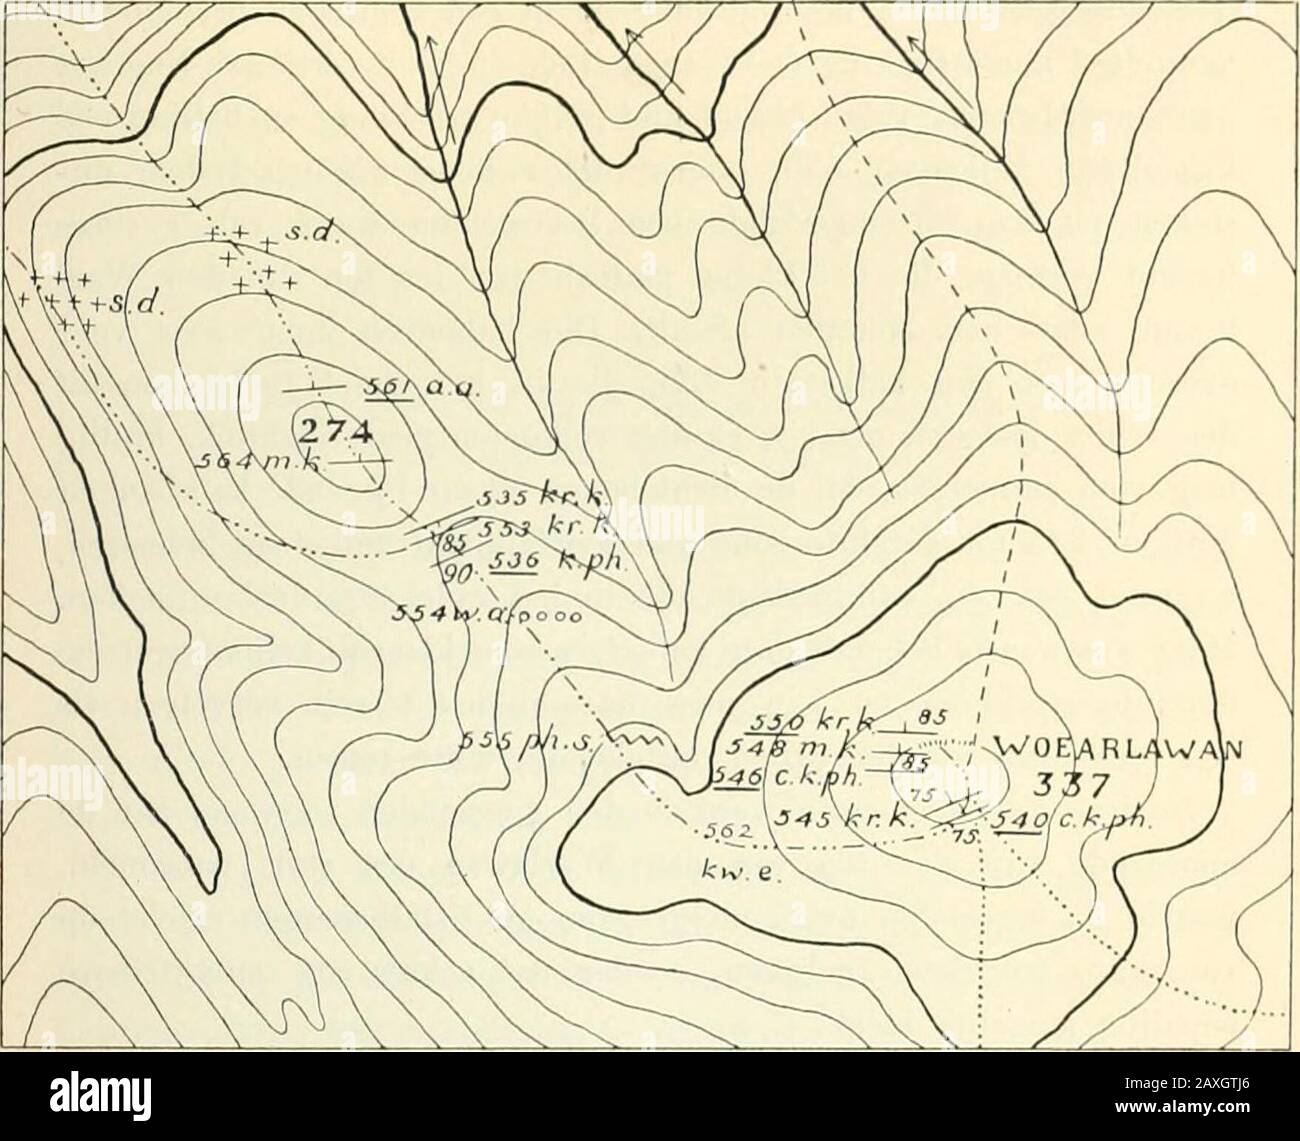 Nederlandsche Timor-expeditie, 1910-1912Beschreven porta G.A.FMolengraaff [et al.] . van dien top komt gemylonitiseerde kalksteen 564 voor. De hoogste top werd nu aan zijn West-noordwestelijke zijde be-steggen; de bodem bedstaat daar eerst uit zeer sterk gedrukten,schisteuzen amandelsteen 554 en ger op uit sterk gefrommeldenphyllitischen schist 555. Anche na het middaguur werd de top (337 M) van den Woear-lawan bereikt. Op den top is door een geringe verbreeding vanden bergkam een vrij vlak terrein van geringe uitgestrekheid ont-staan, waarin een paar kleine karbouwenpoelen liggen. Aan dezuidz Foto Stock